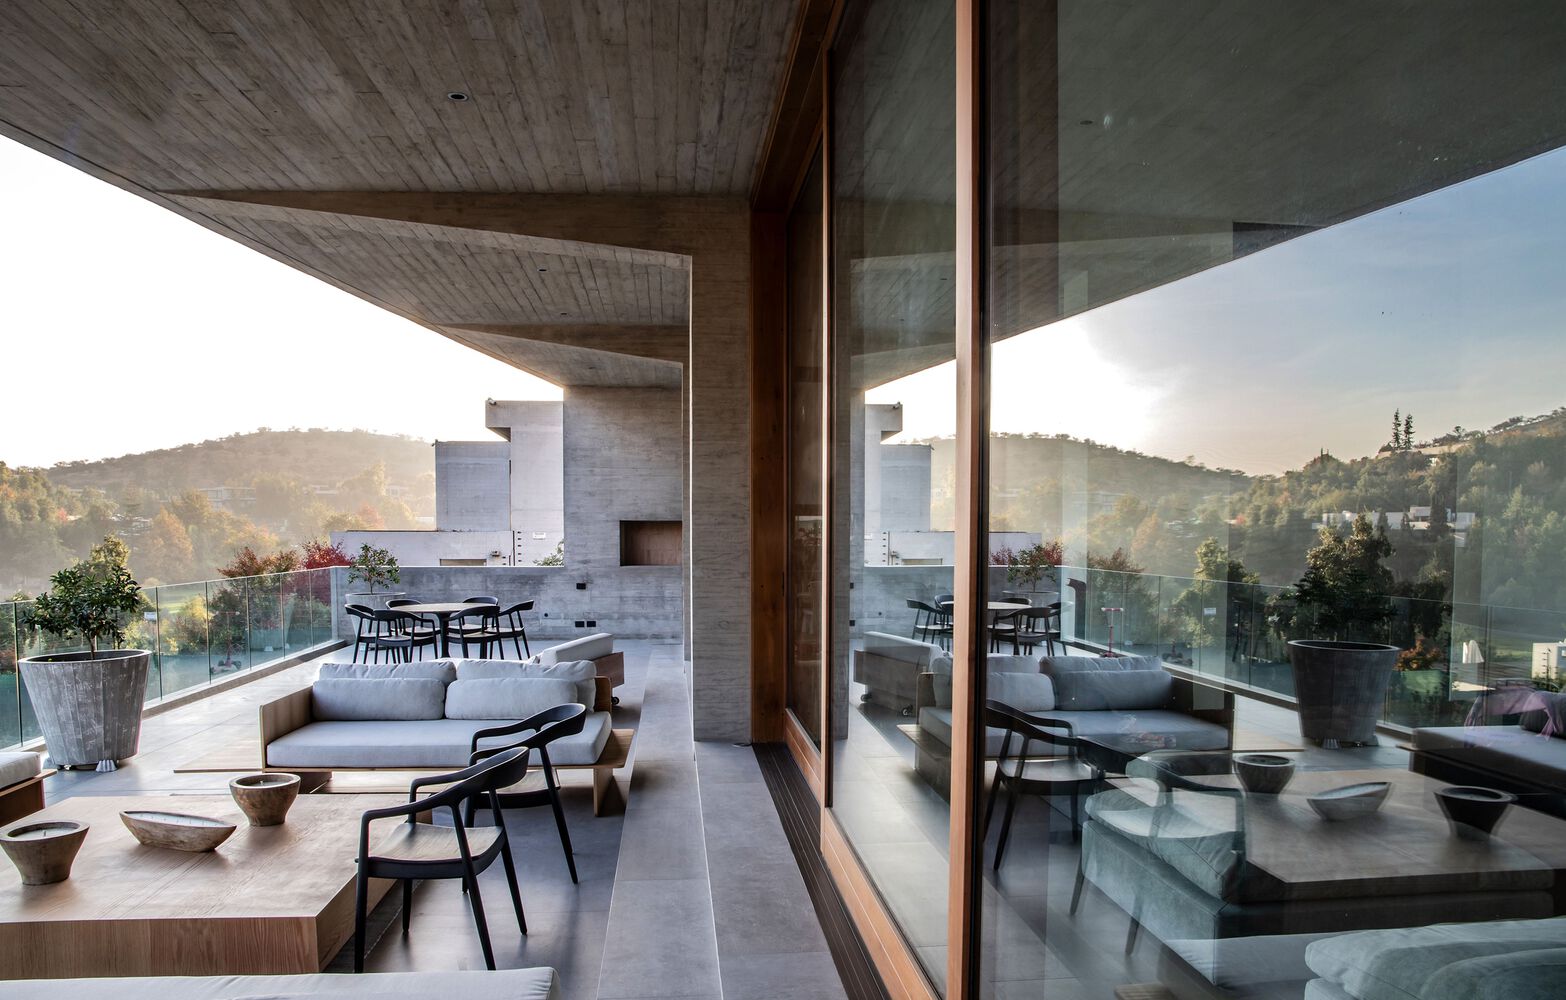 別墅設計,智利,Gonzalo Mardones V Arquitectos,木模混凝土,別墅設計案例,別墅裝修,現代風格別墅設計,野獸派風格別墅,680㎡